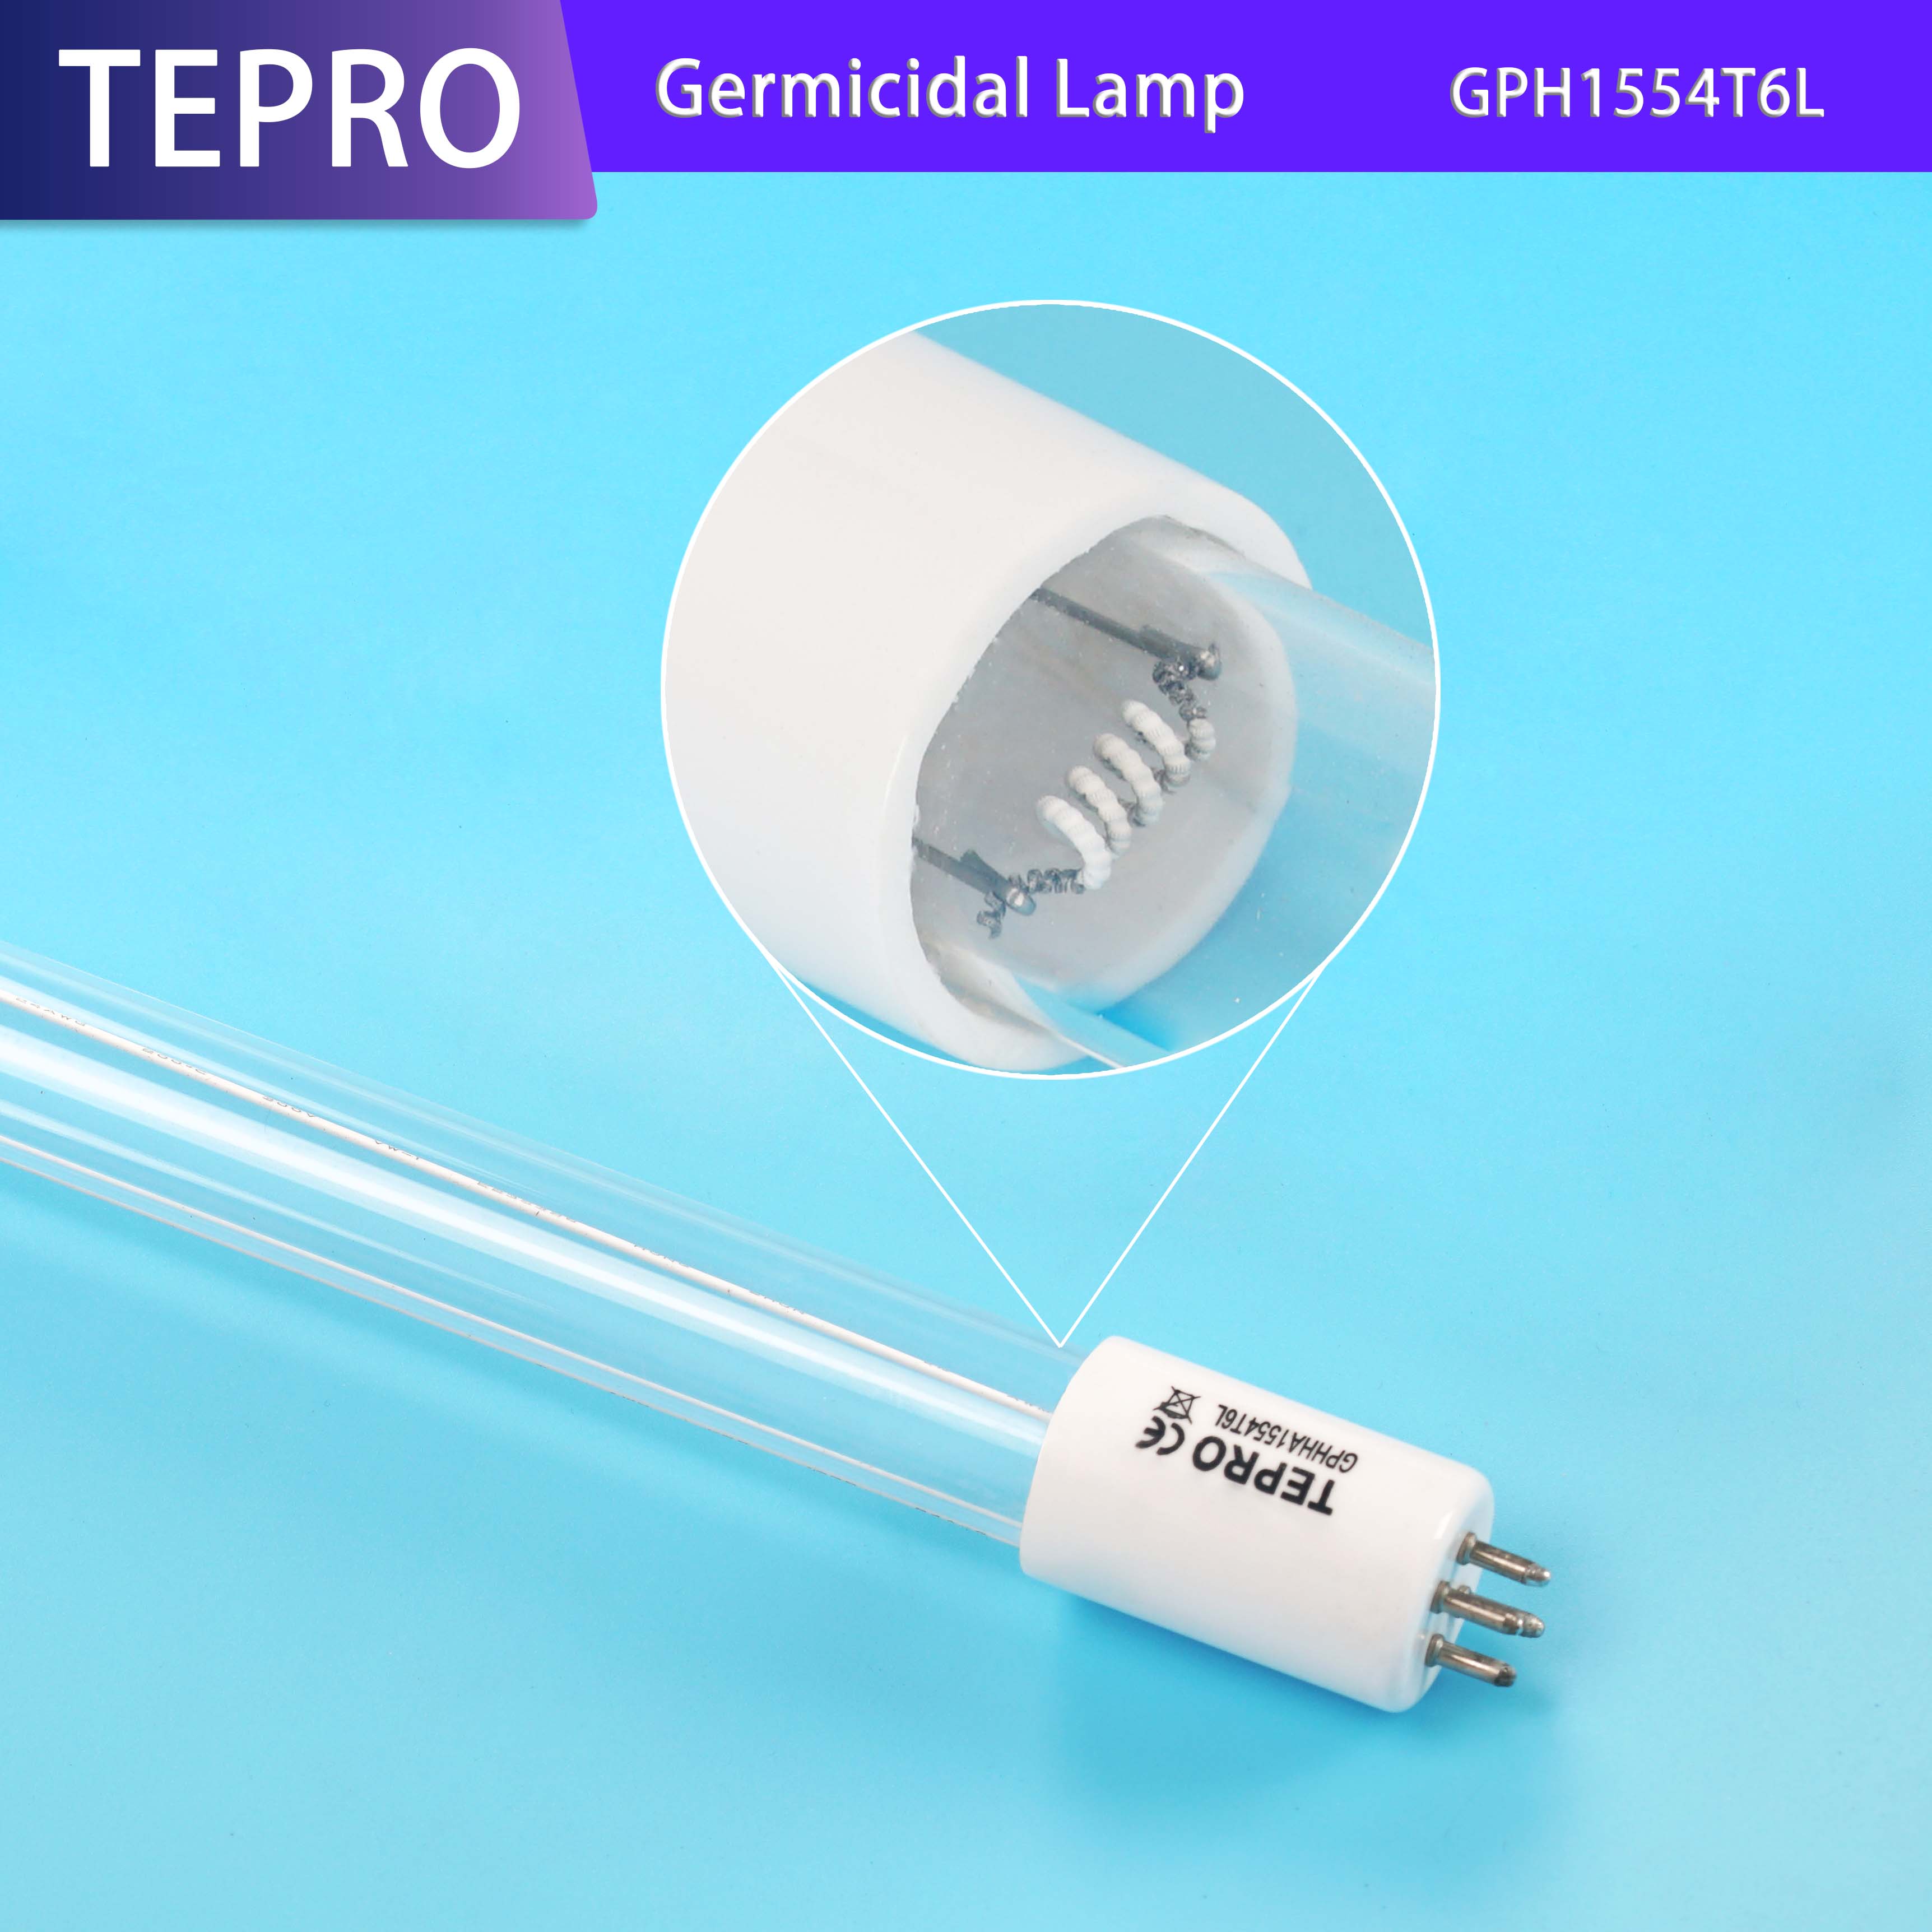 Tepro-uvc light | PRODUCTS | Tepro-1